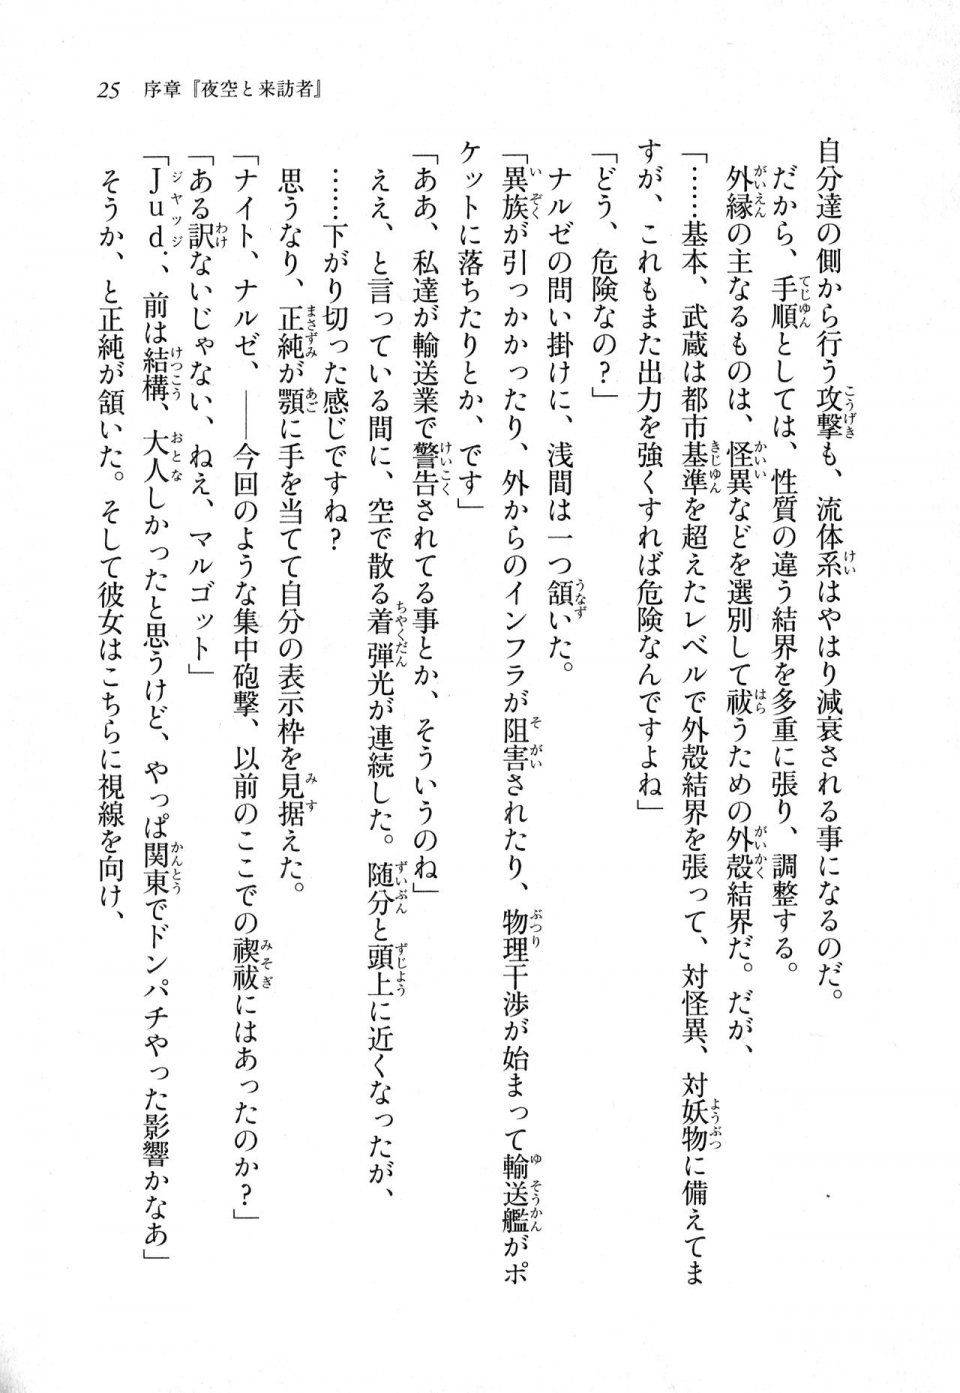 Kyoukai Senjou no Horizon LN Sidestory Vol 1 - Photo #24